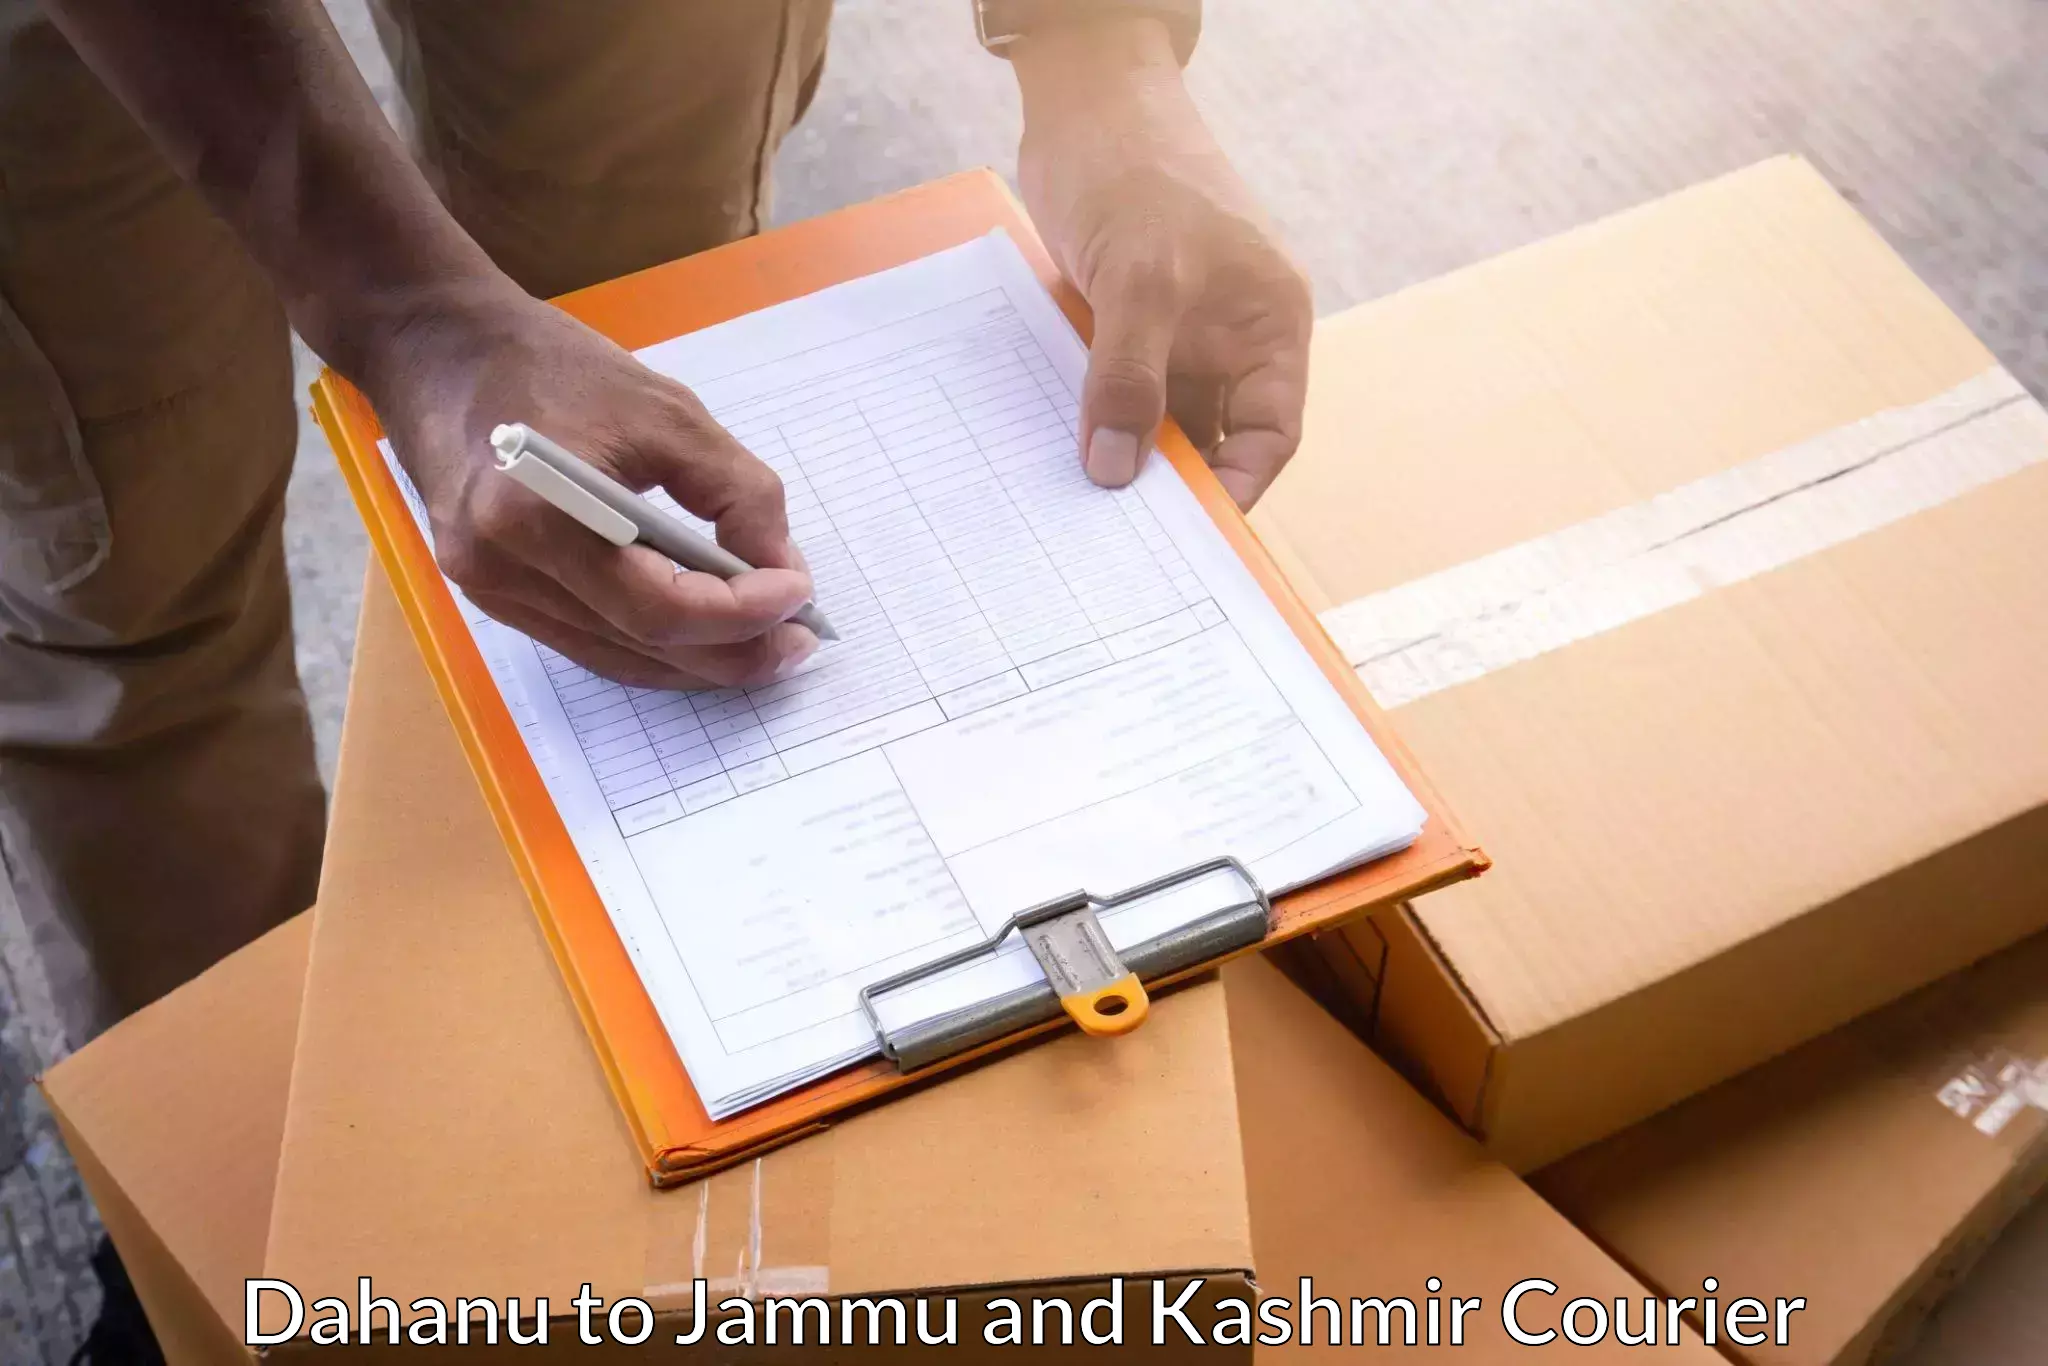 High-capacity parcel service Dahanu to Srinagar Kashmir